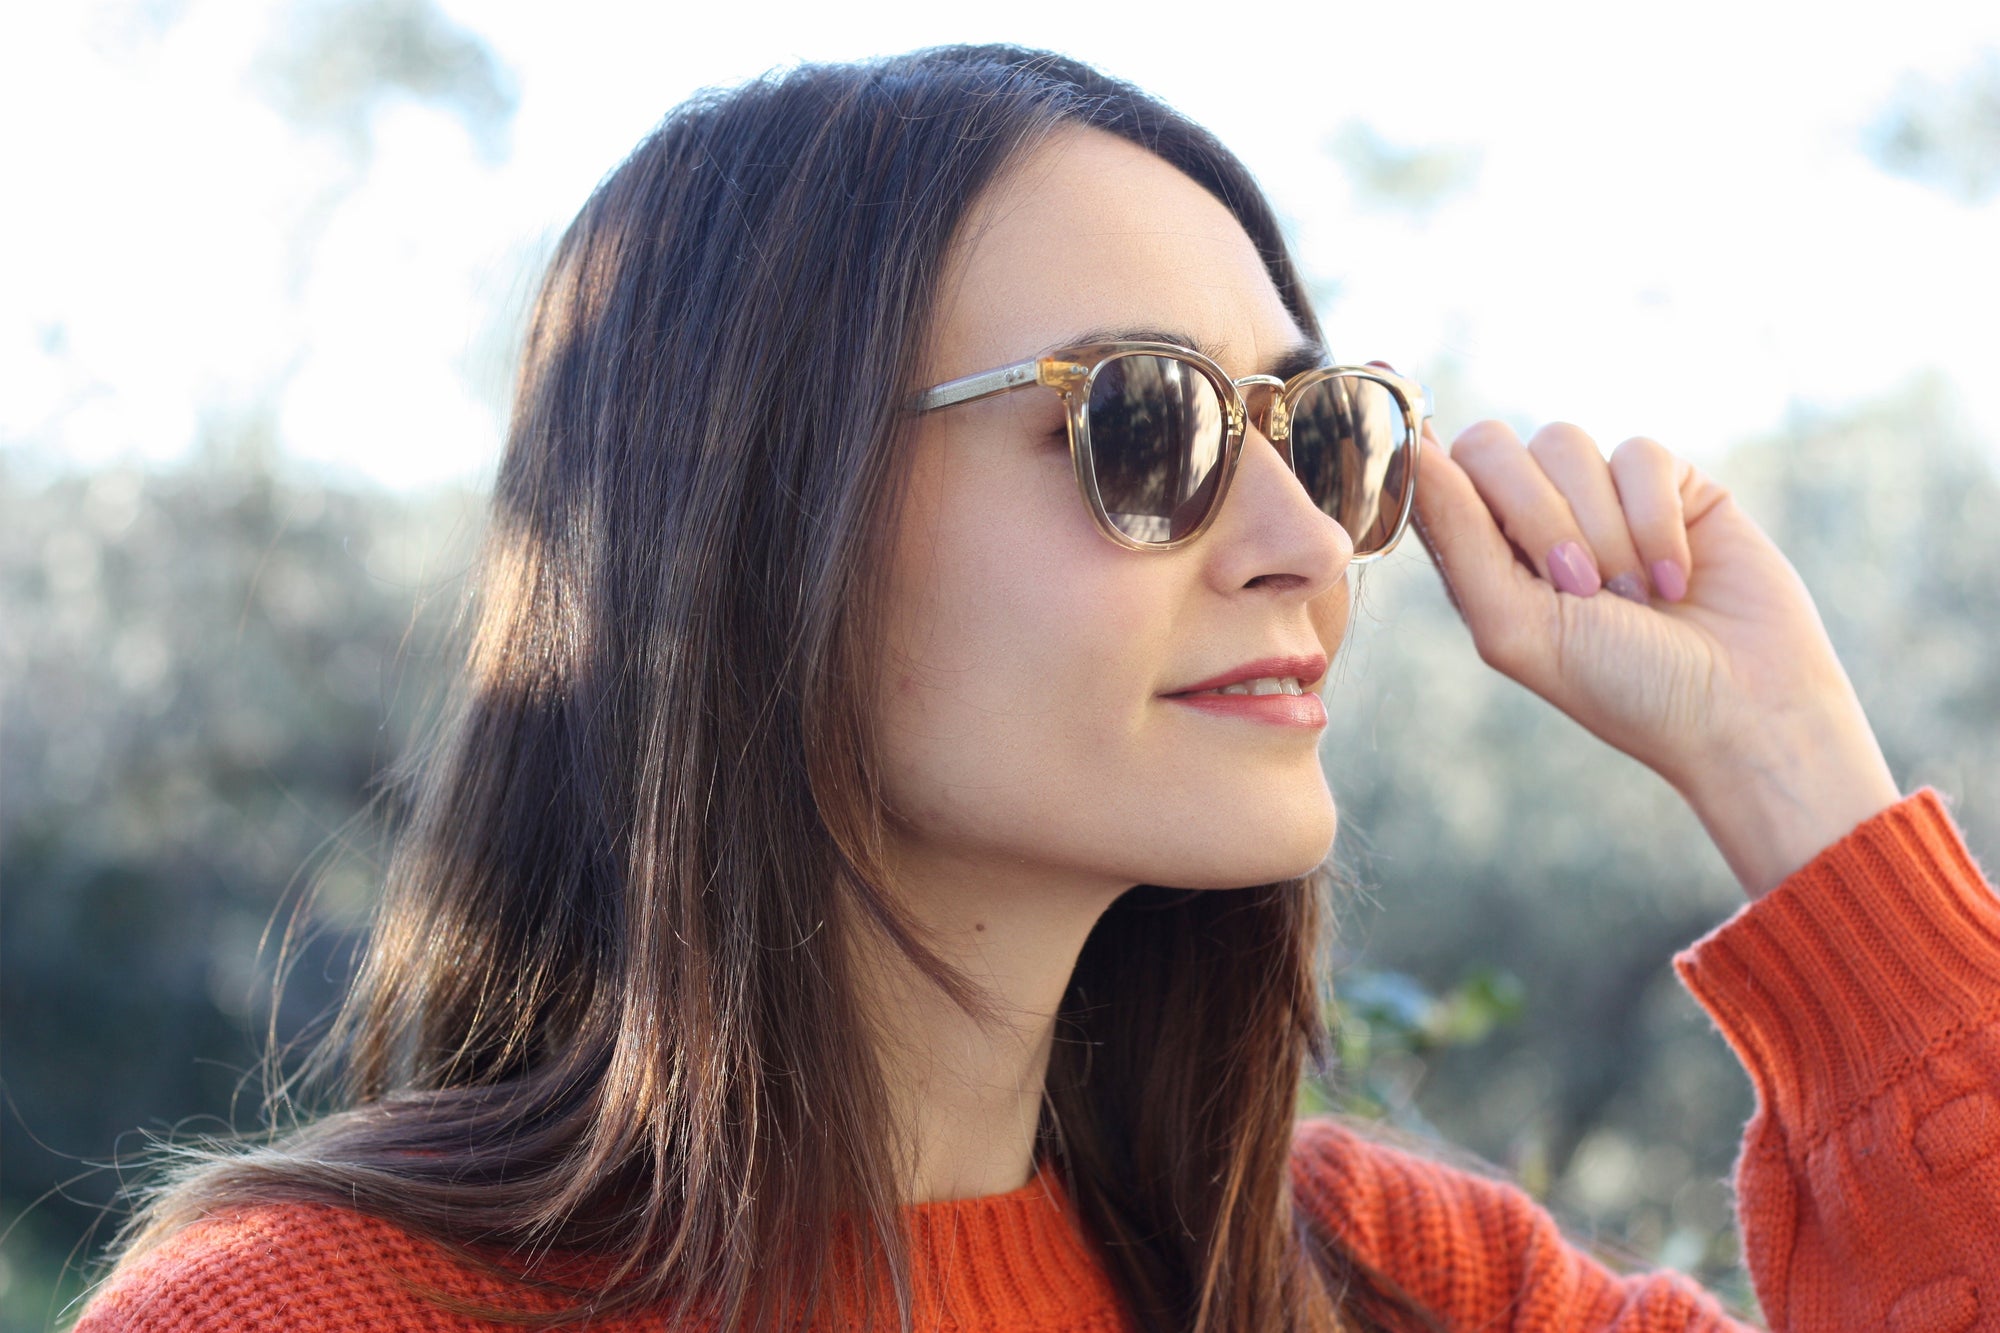 Do Blue Light Glasses Block Sunlight? | KOALAEYE OPTICAL